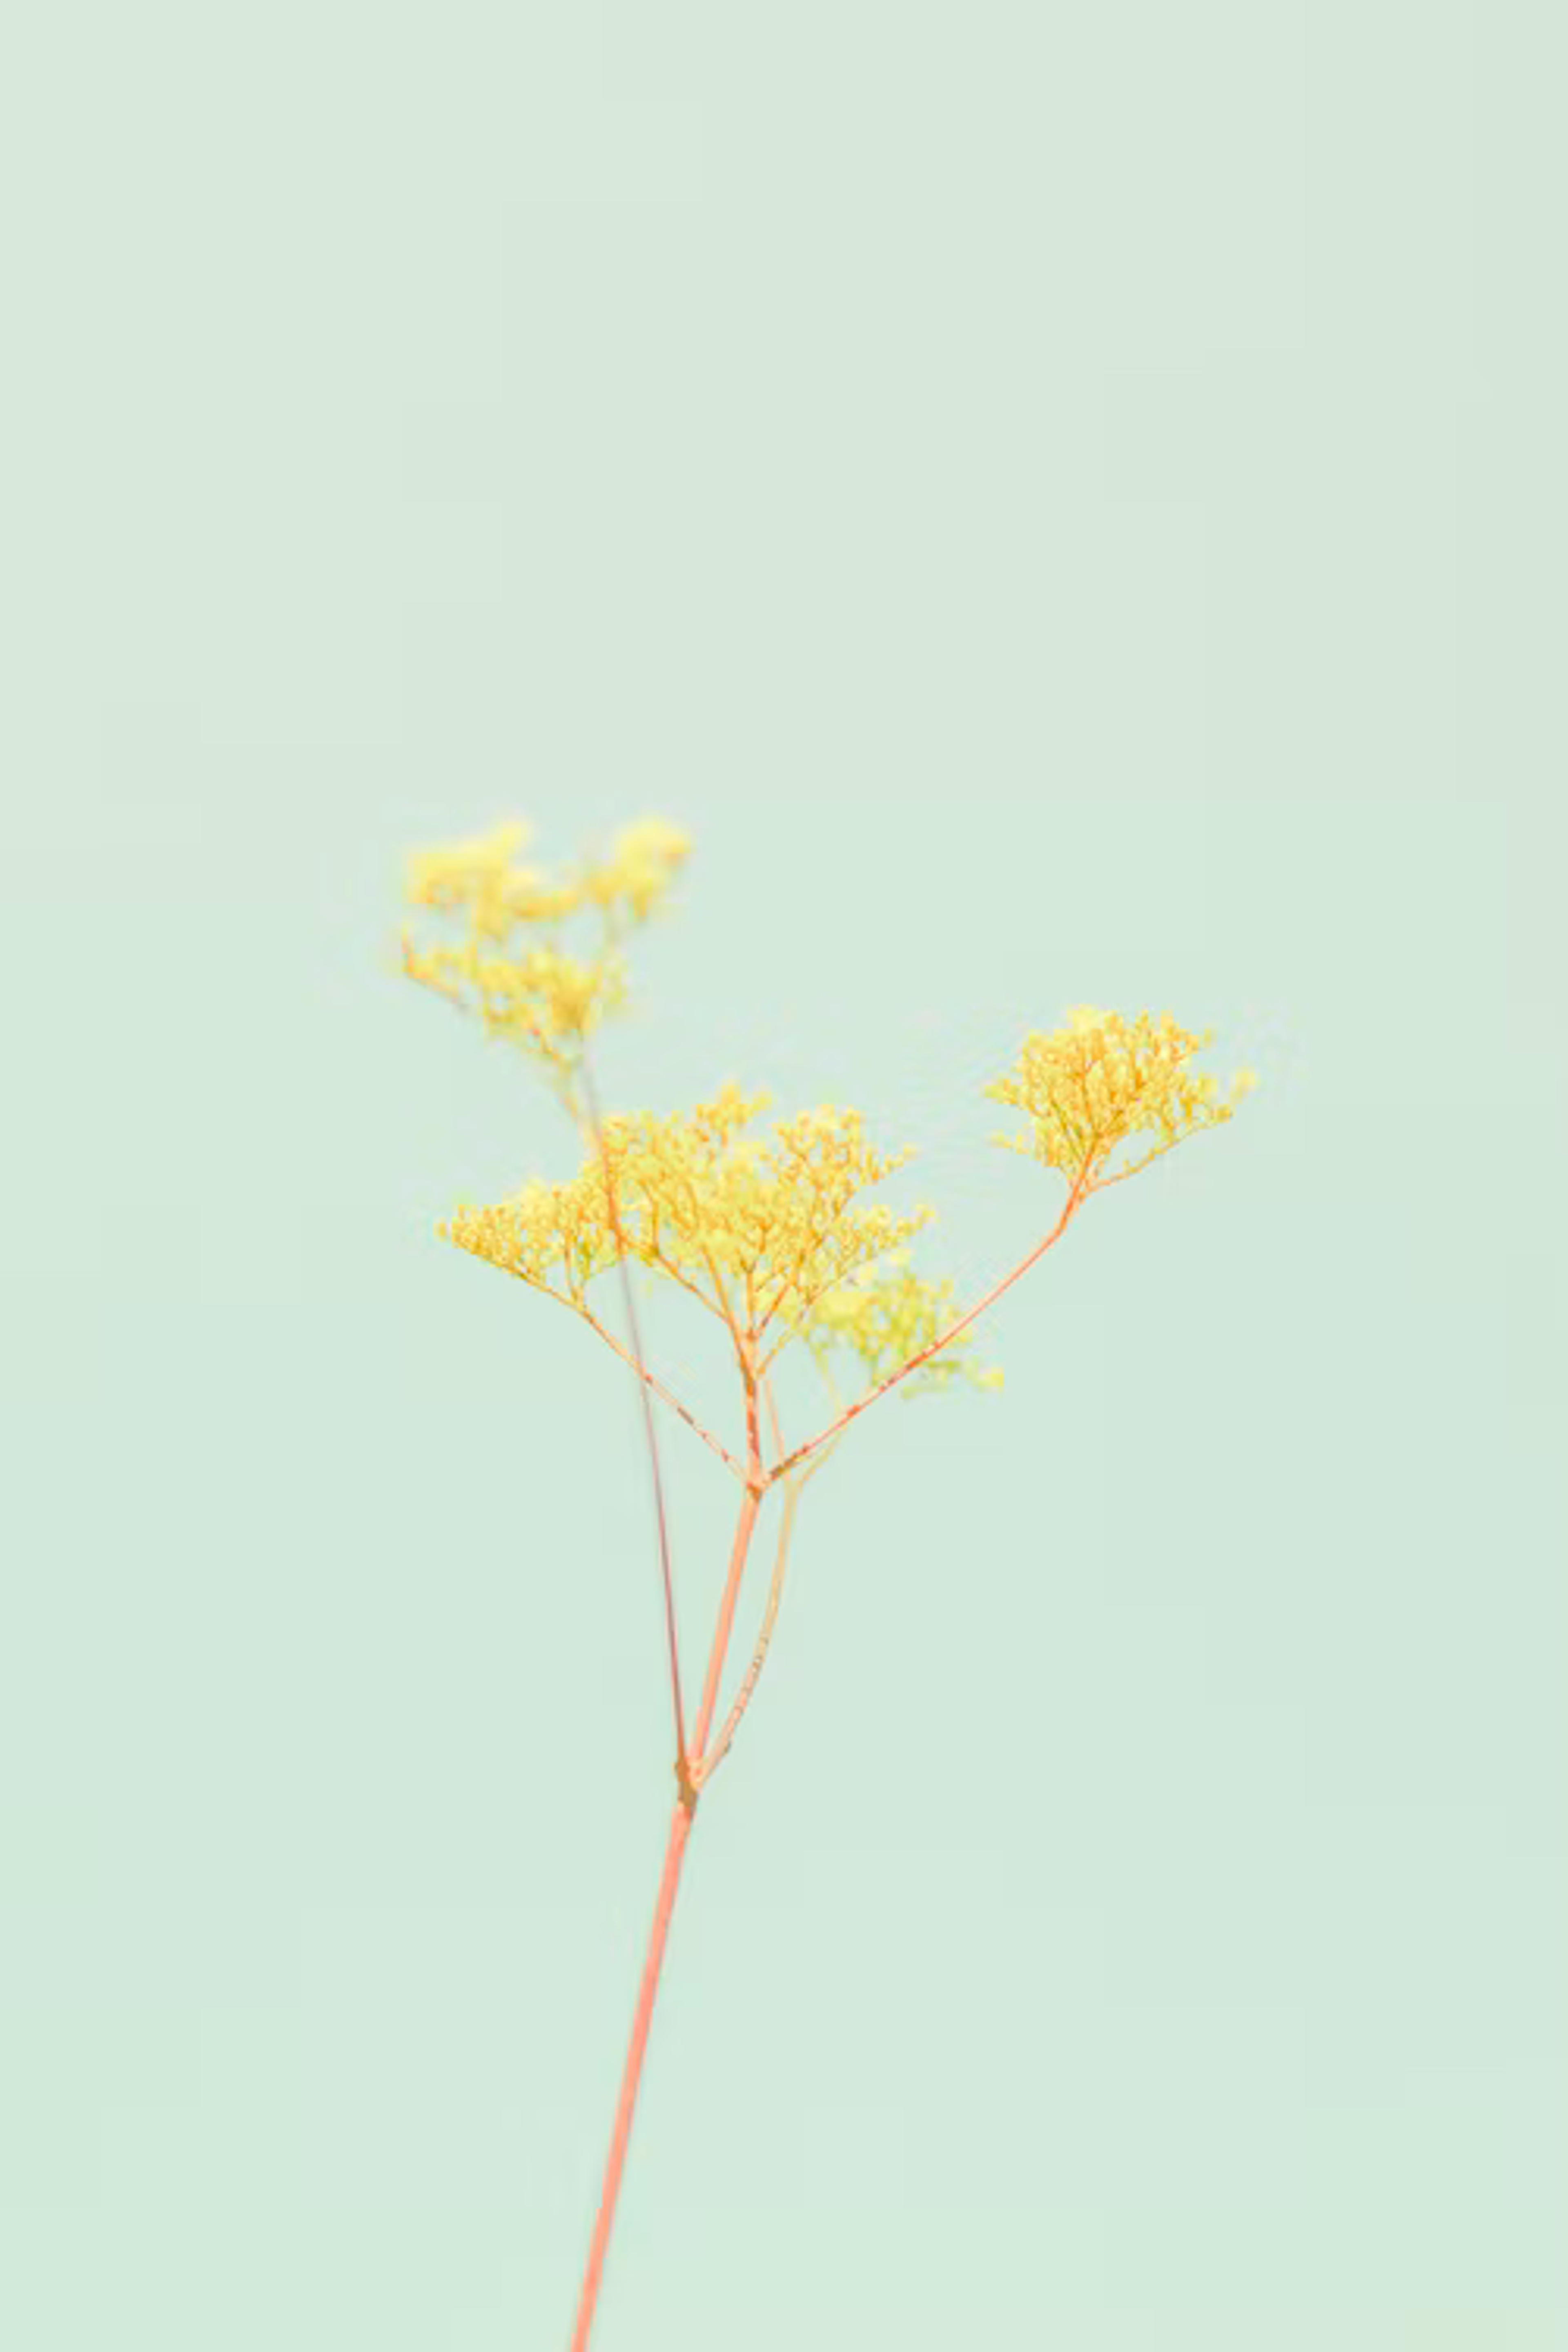 yellow leaf tree during daytime photo – Free Image on Unsplash